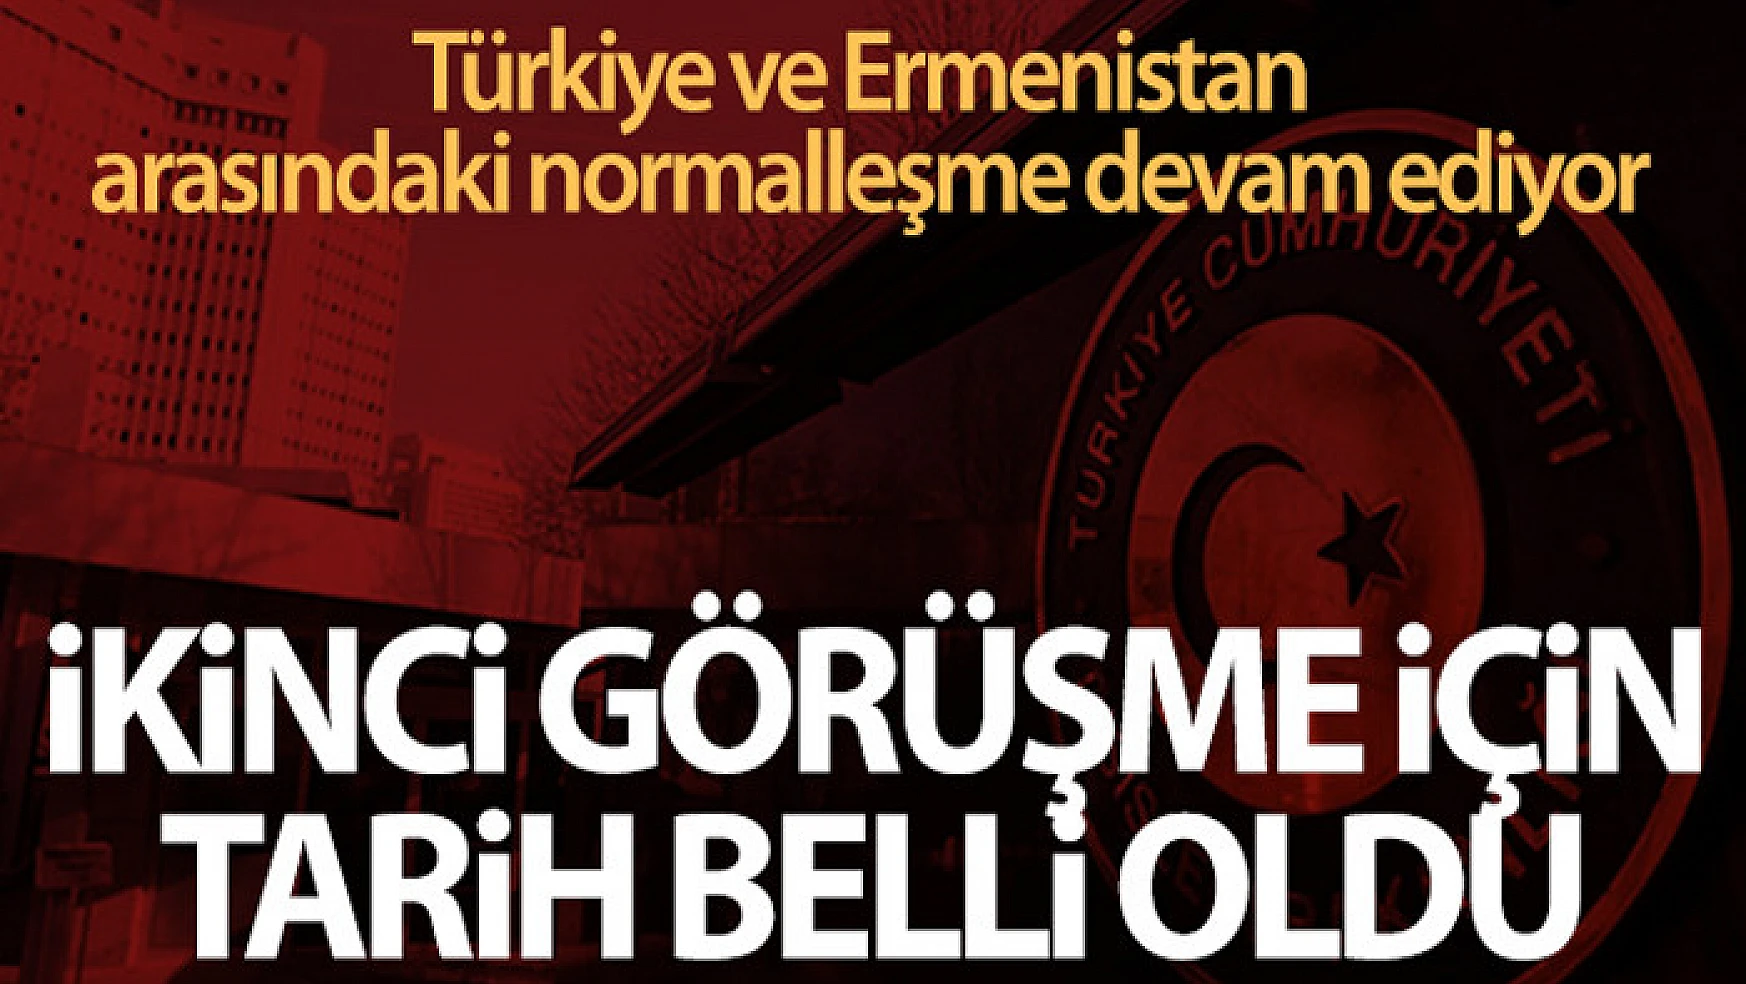 Türkiye ve Ermenistan arasındaki normalleşme toplantısı Viyana'da yapılacak